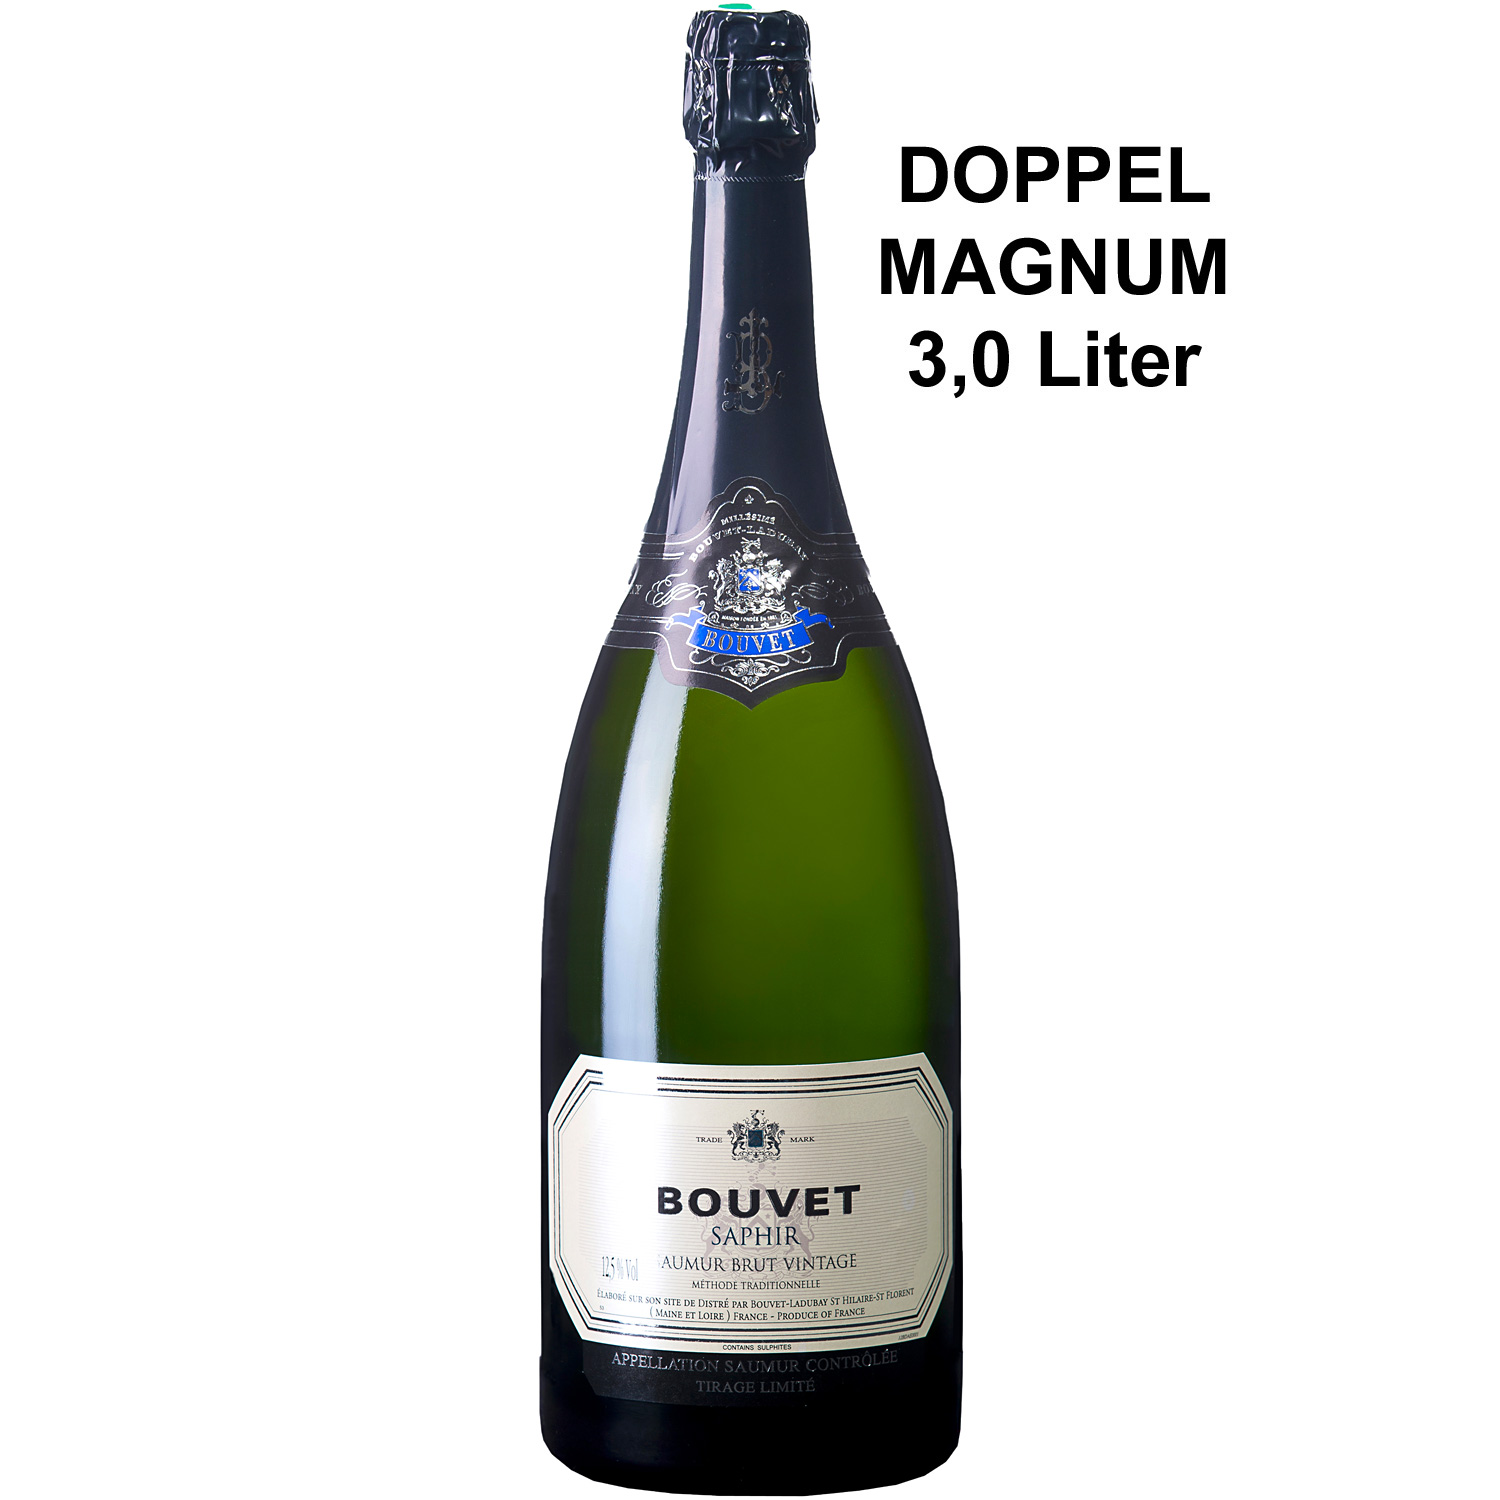 Bouvet Crémant Saumur Brut Blanc Saphir AOP Doppel-Magnum